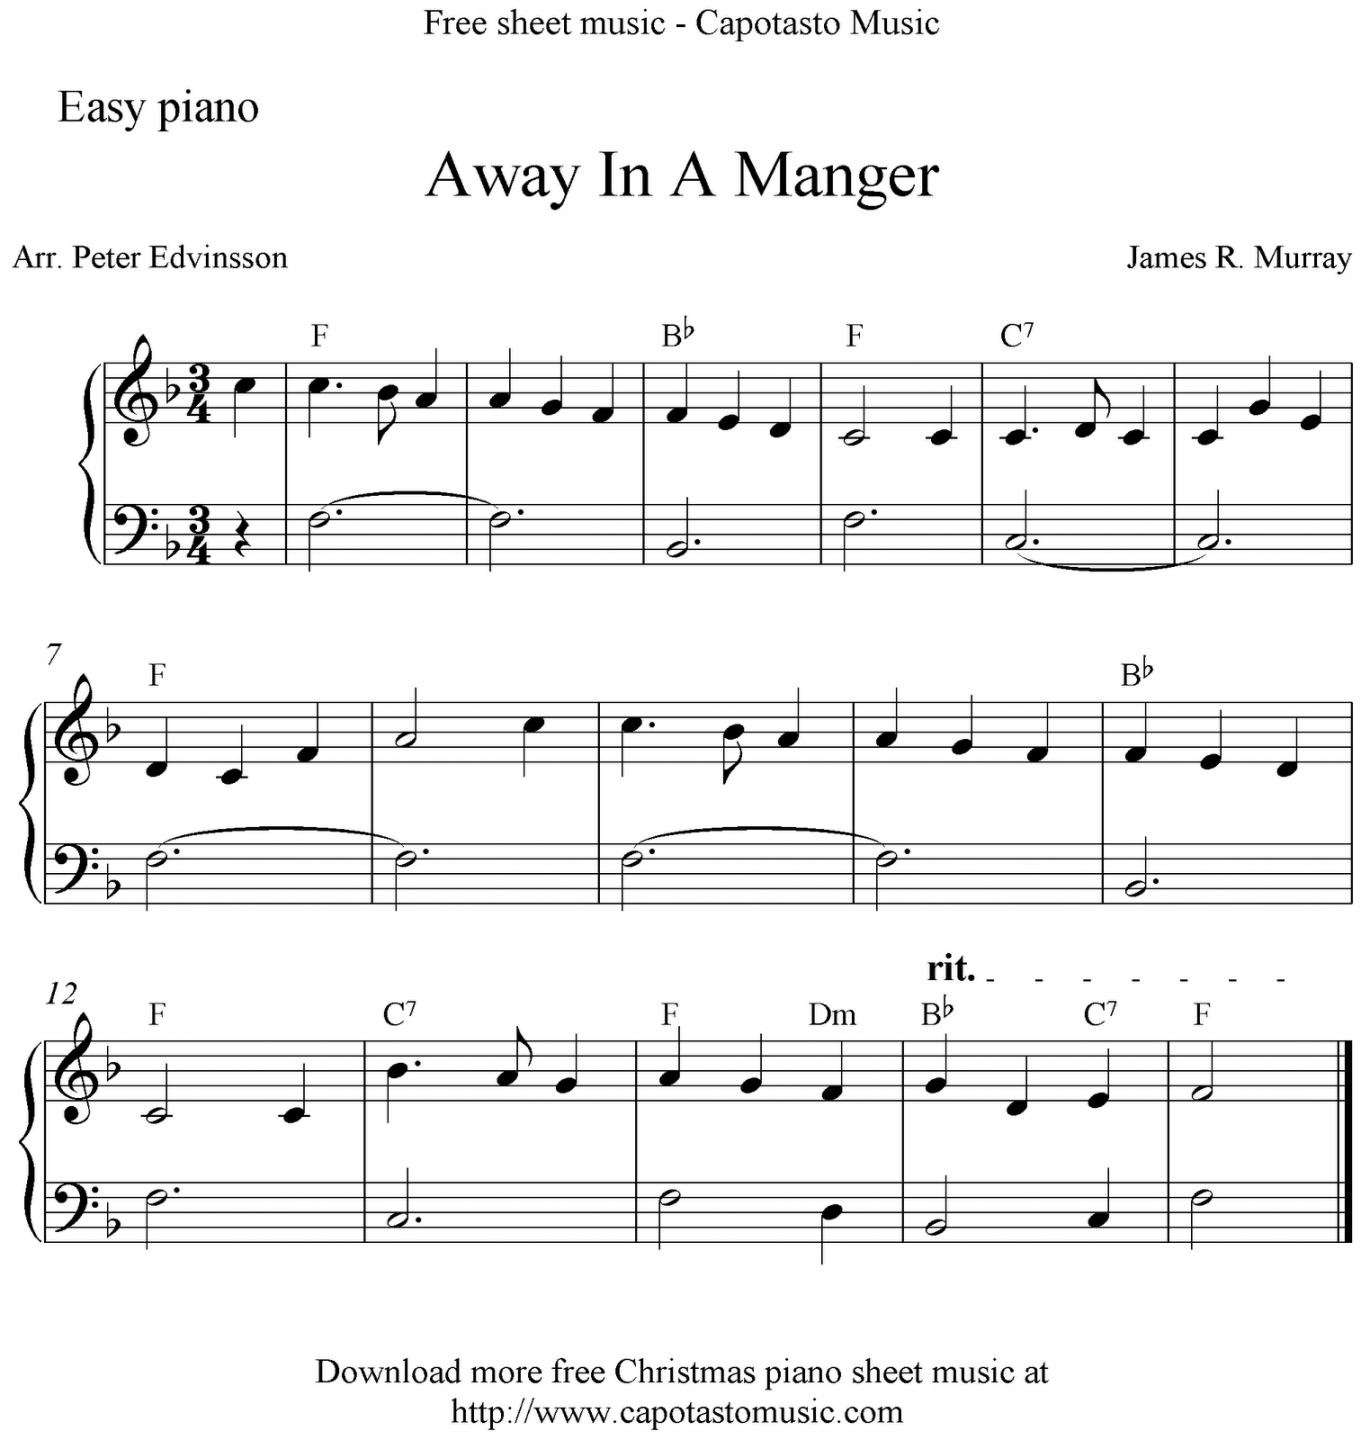 free sheet music beginners - Google Search  Christmas piano sheet